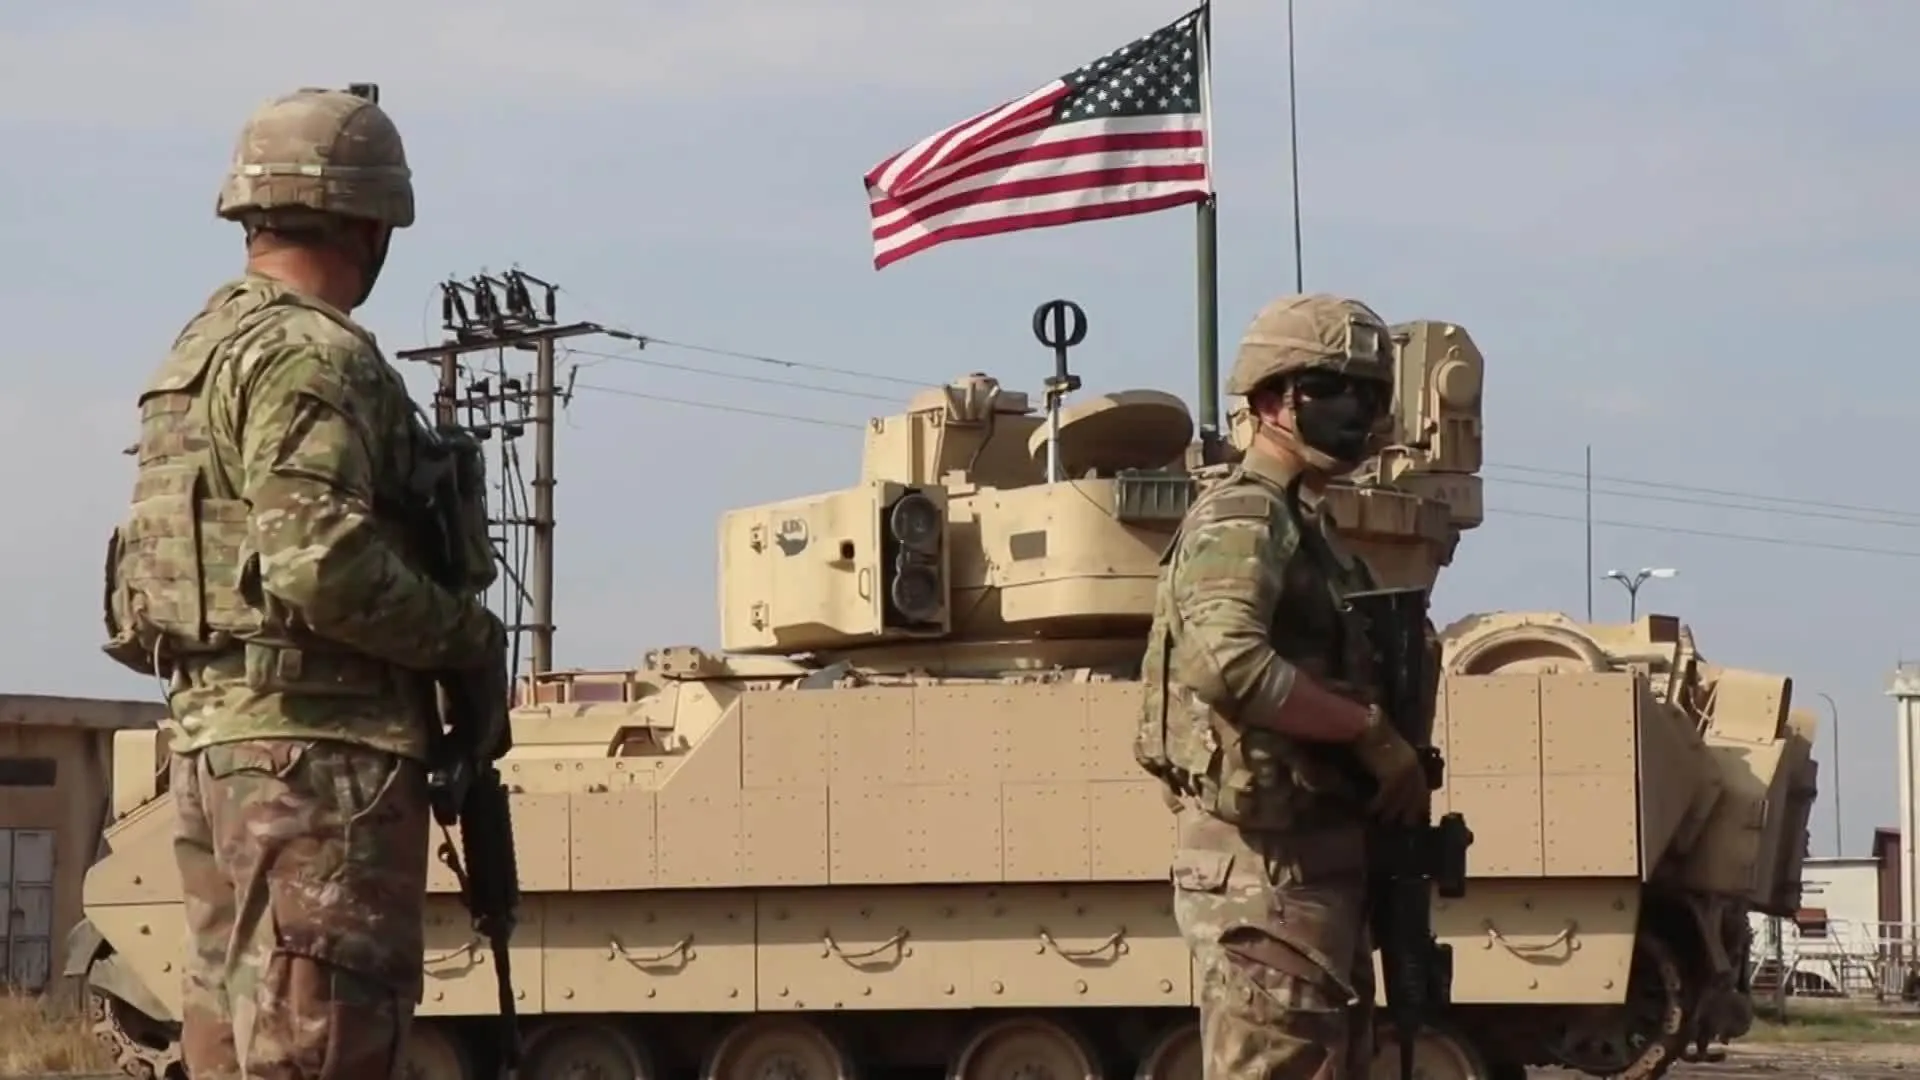 باحث: الهجمات على القوات الأمريكية تذكير مؤلم بضرورة الانسحاب من سوريا